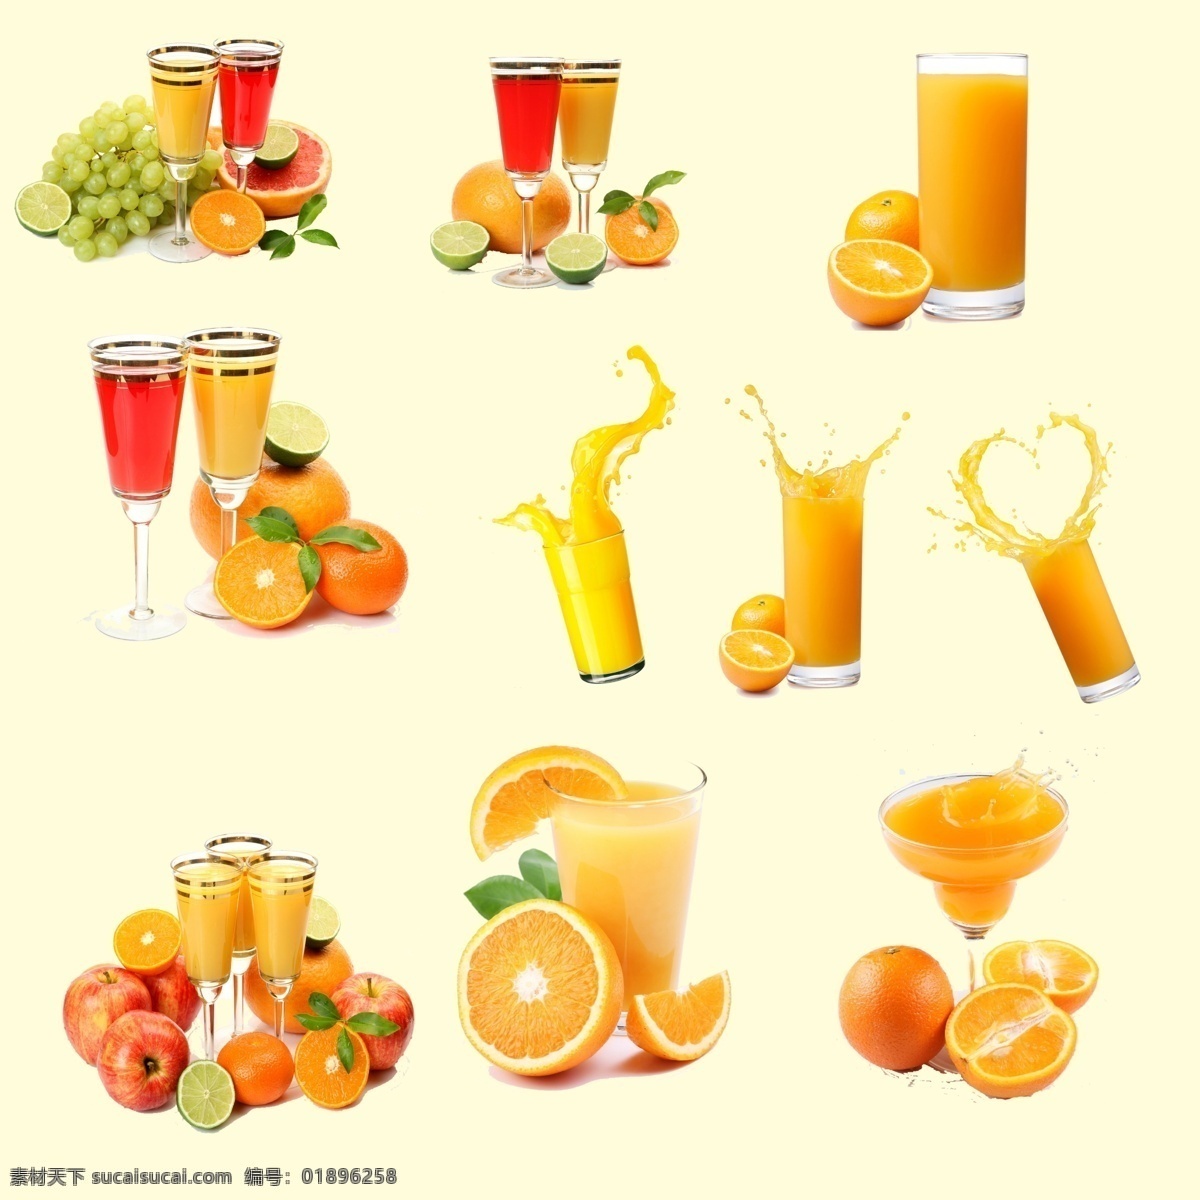 橙汁 橙子素材下载 橙子模板下载 橙子 一杯橙汁 西餐 杯子 桔子汁 榨汁 果汁 水果汁 分层 源文件